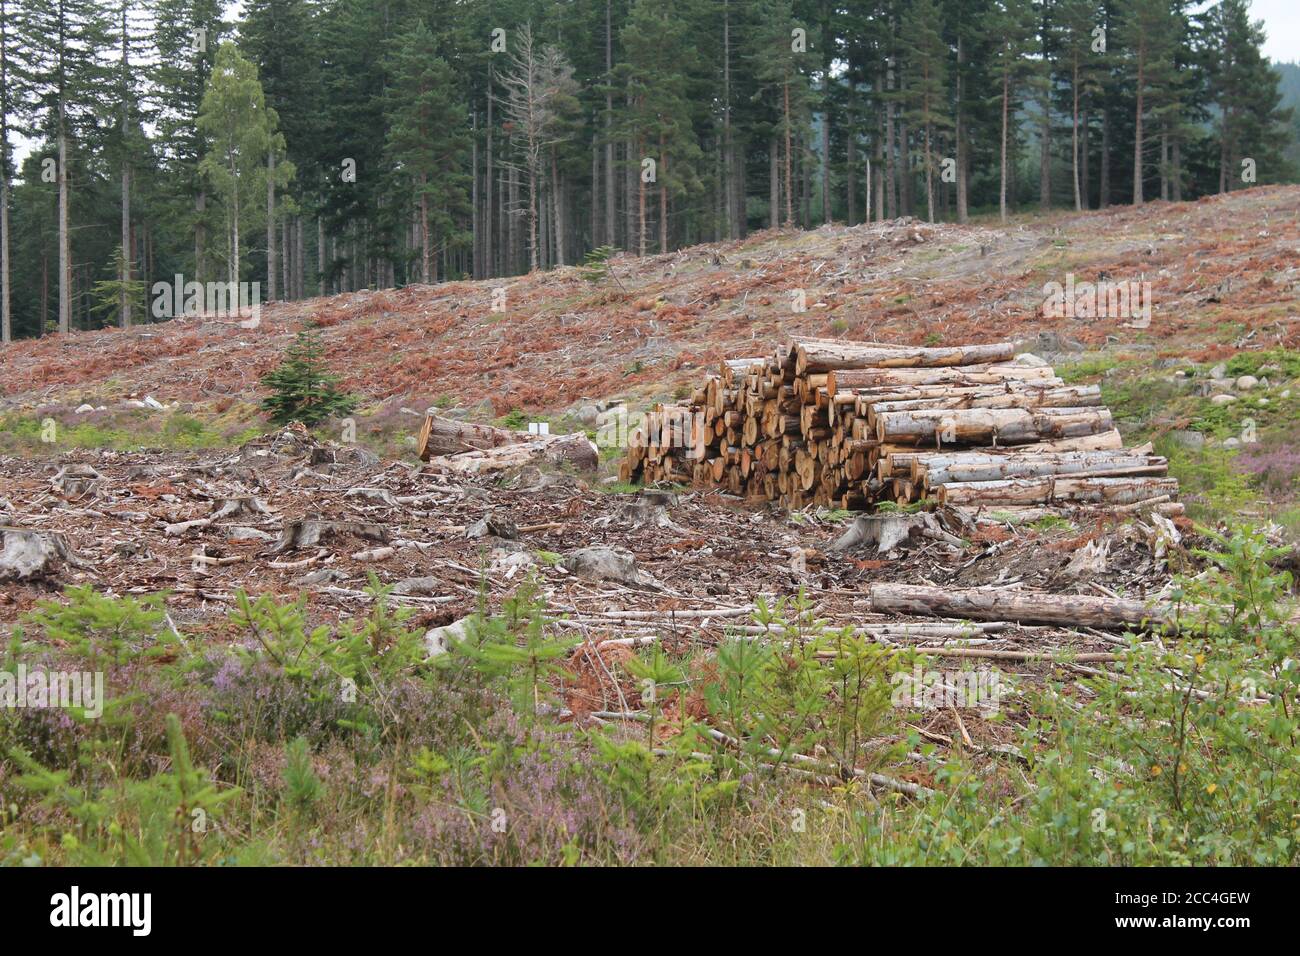 Immagine vivida della deforestazione della Scozia nel Regno Unito, concetto di perdita di habitat e concetto di cambiamento climatico Foto Stock